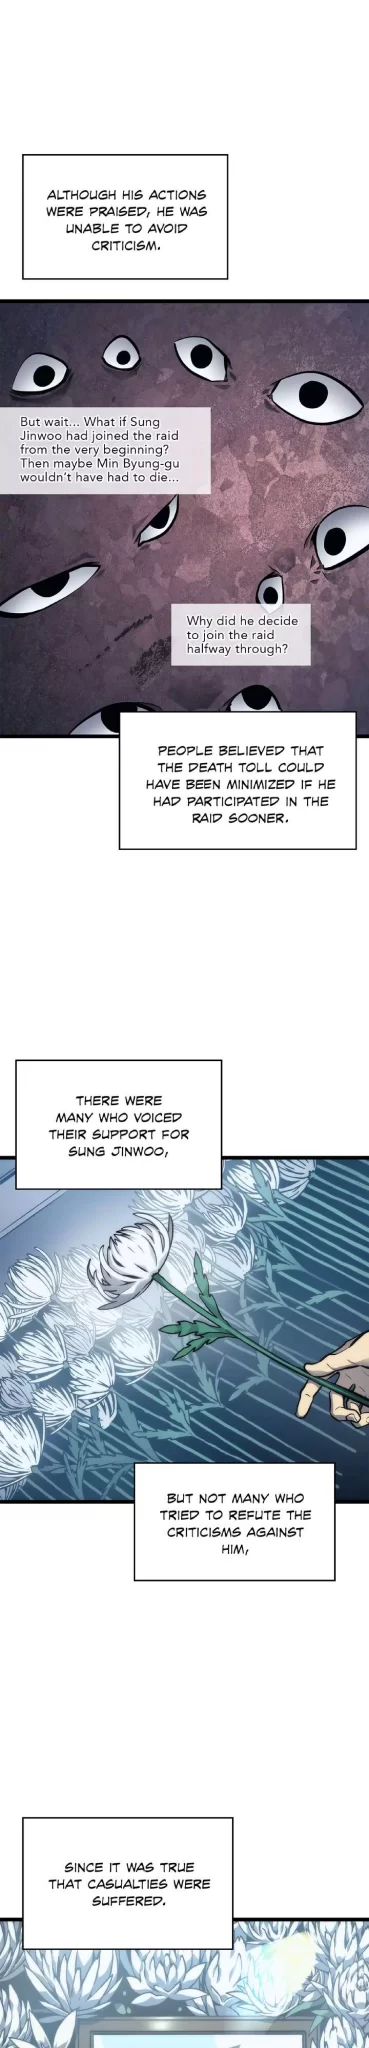 Solo Leveling Manga Manga Chapter - 108 - image 4